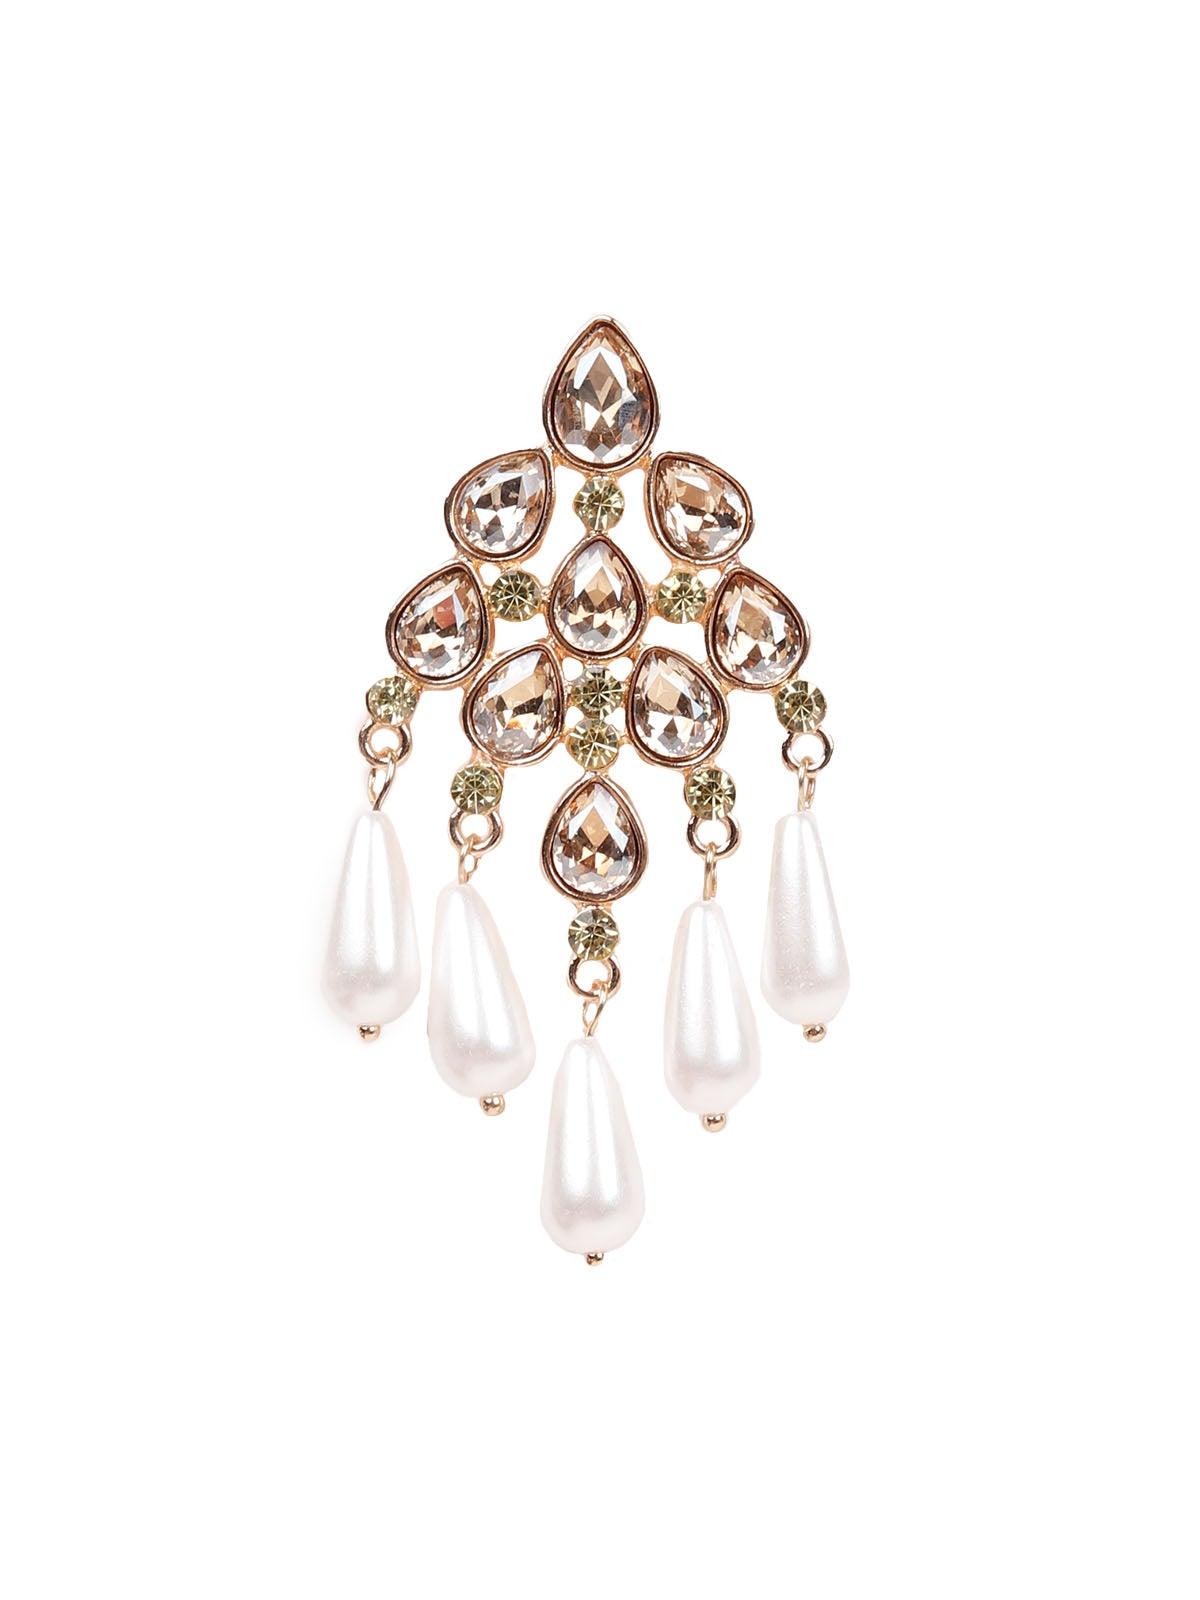 Stunning white bead drop earrings - Odette